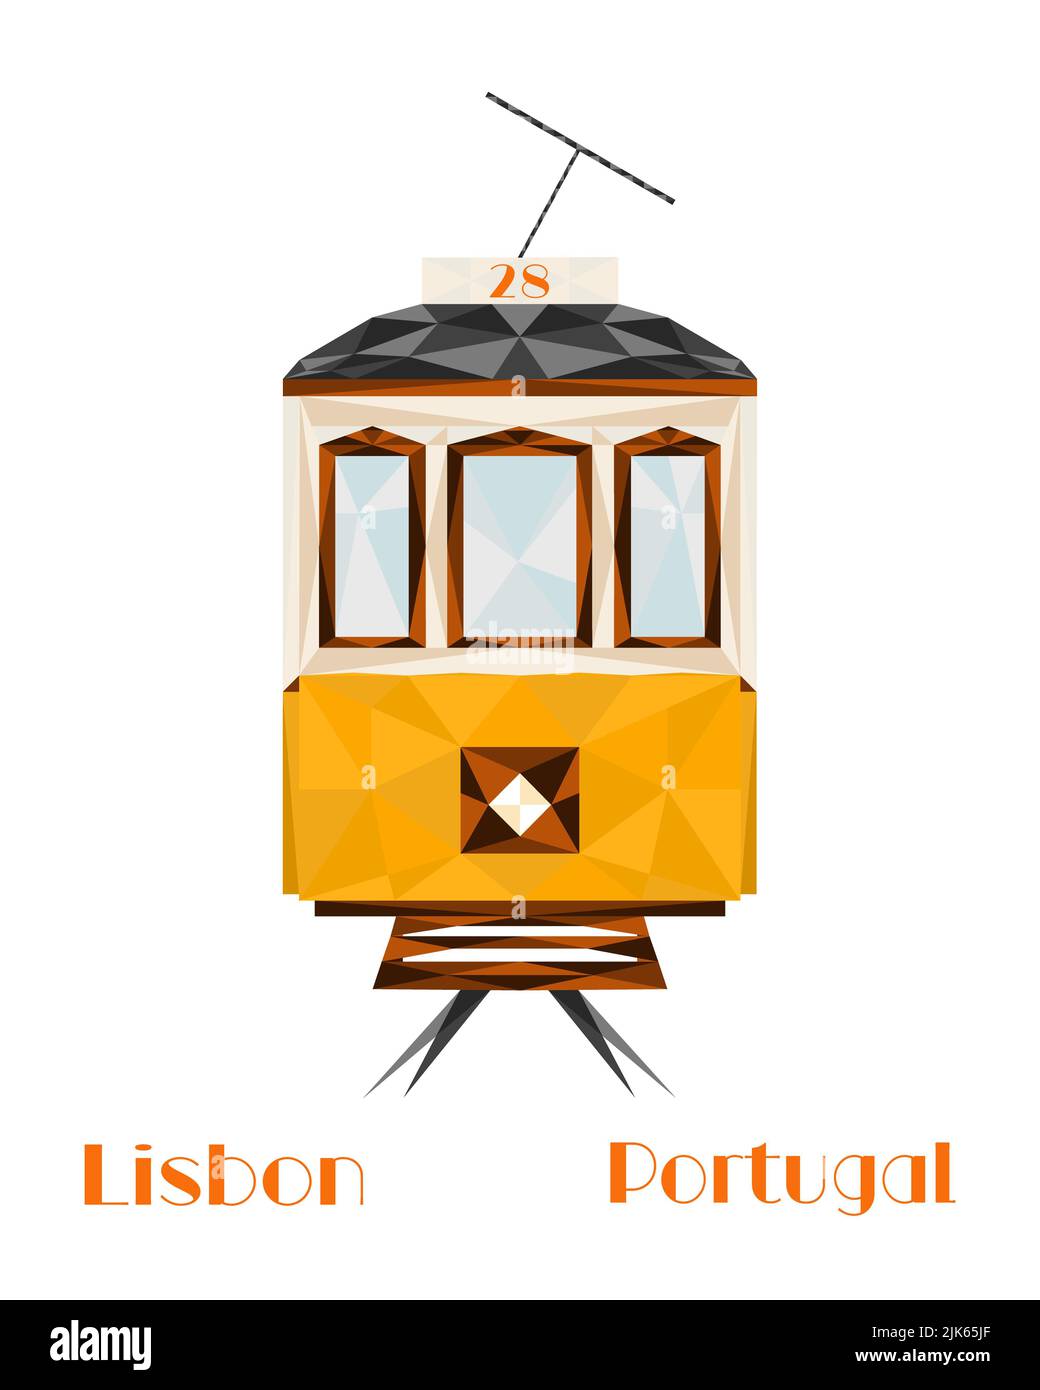 Lisbona, capitale del Portogallo. Iconico tram giallo di Lisbona. Illustrazione di viaggio e turismo, design moderno a basso contenuto di poli. Foto Stock